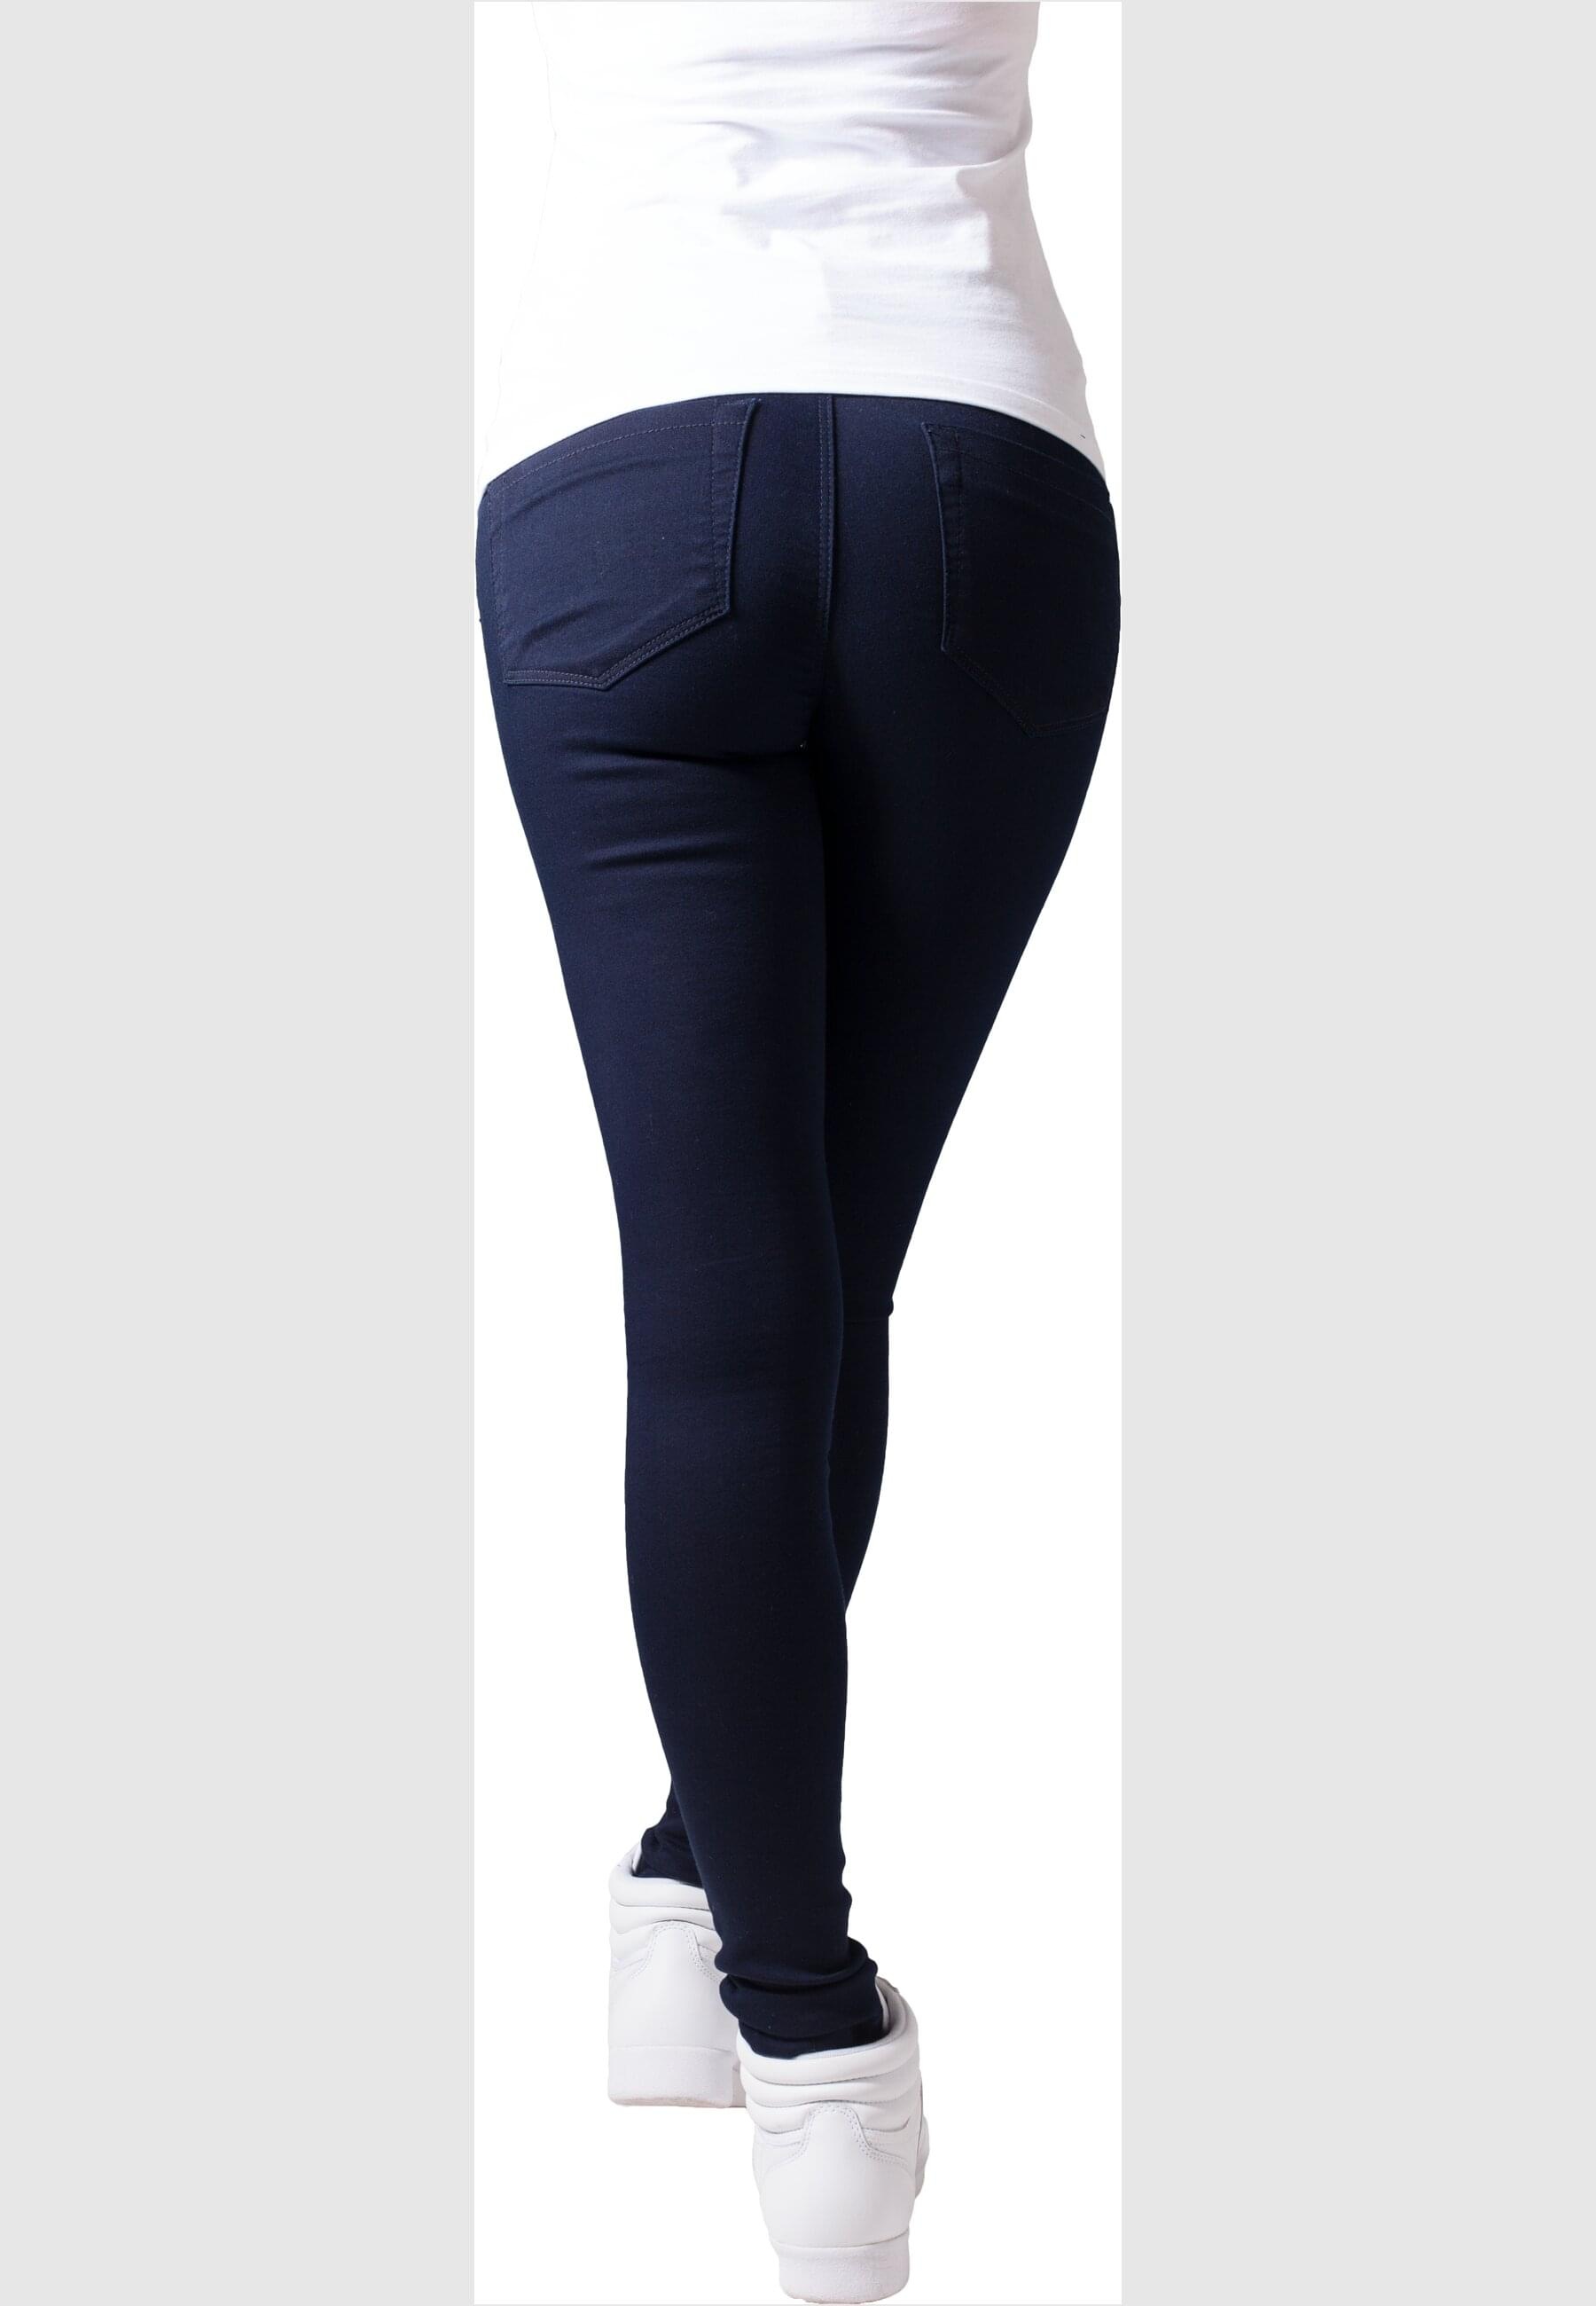 URBAN CLASSICS Bequeme Jeans »Urban Classics Damen Ladies Stretch Biker Pants«, (1 tlg.)